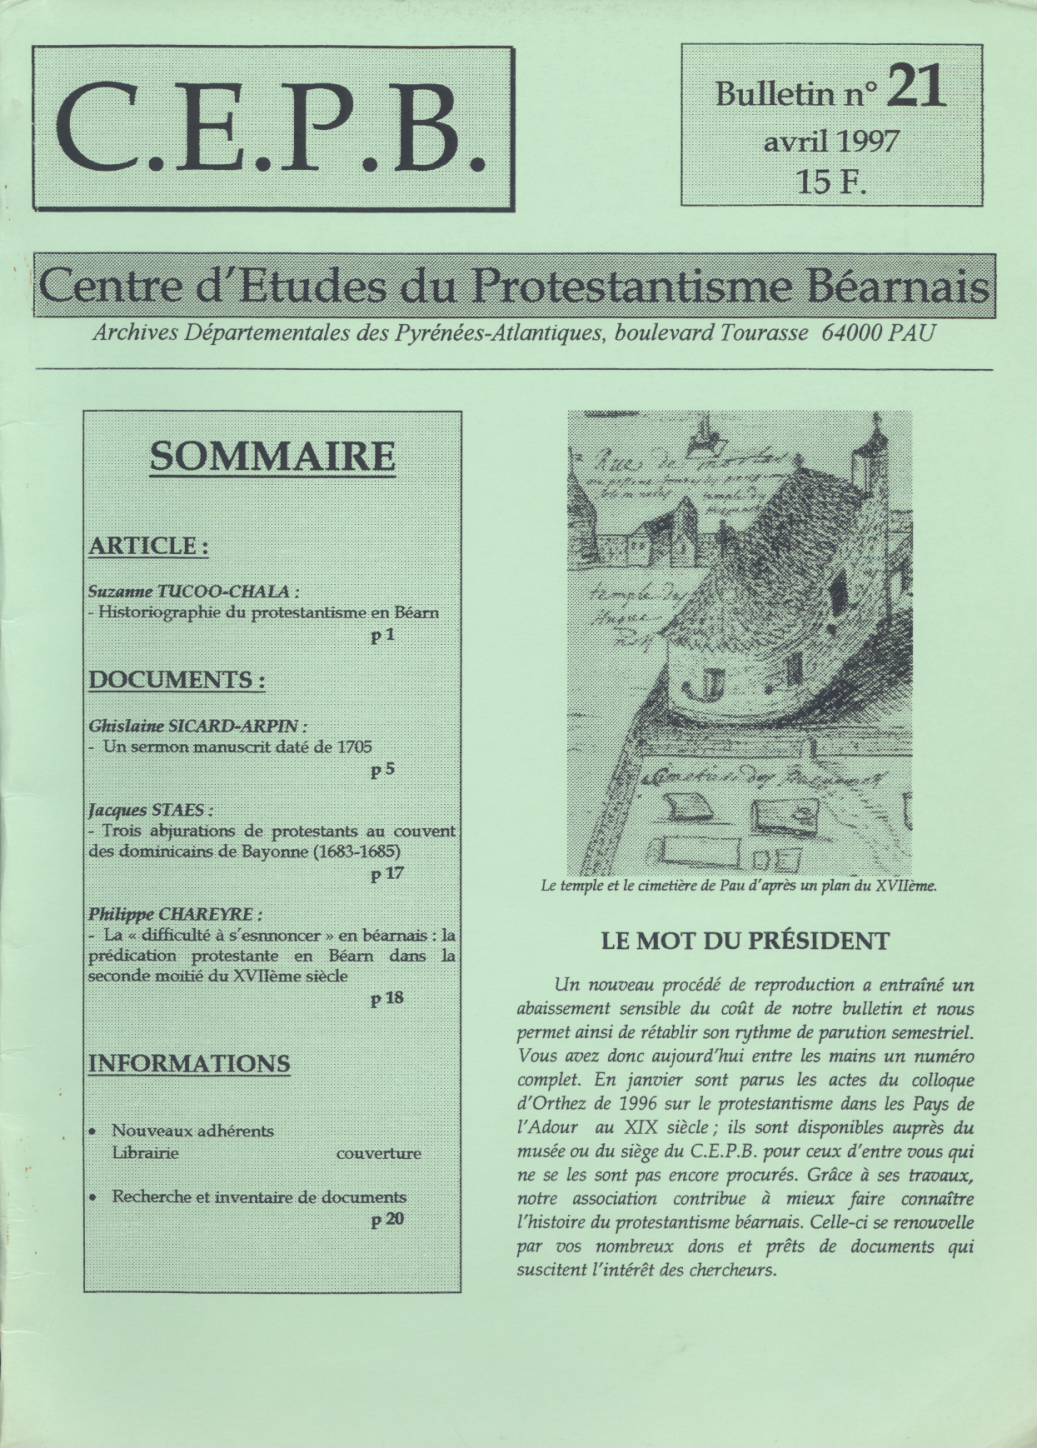 CEPB protestantisme Béarn bulletin 21